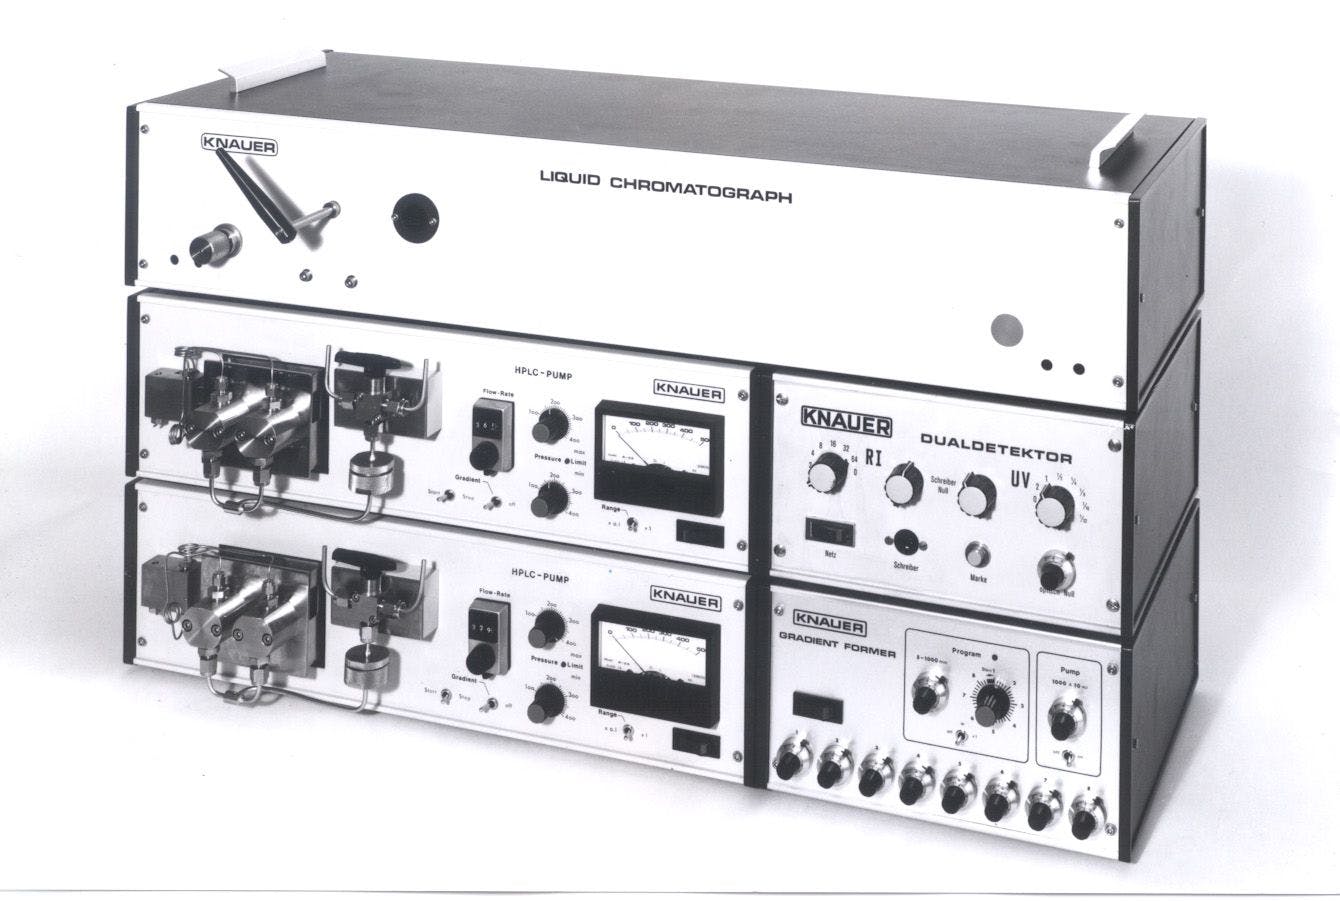 Modular Knauer HPLC system, 1974 | Image Credit: © Knauer